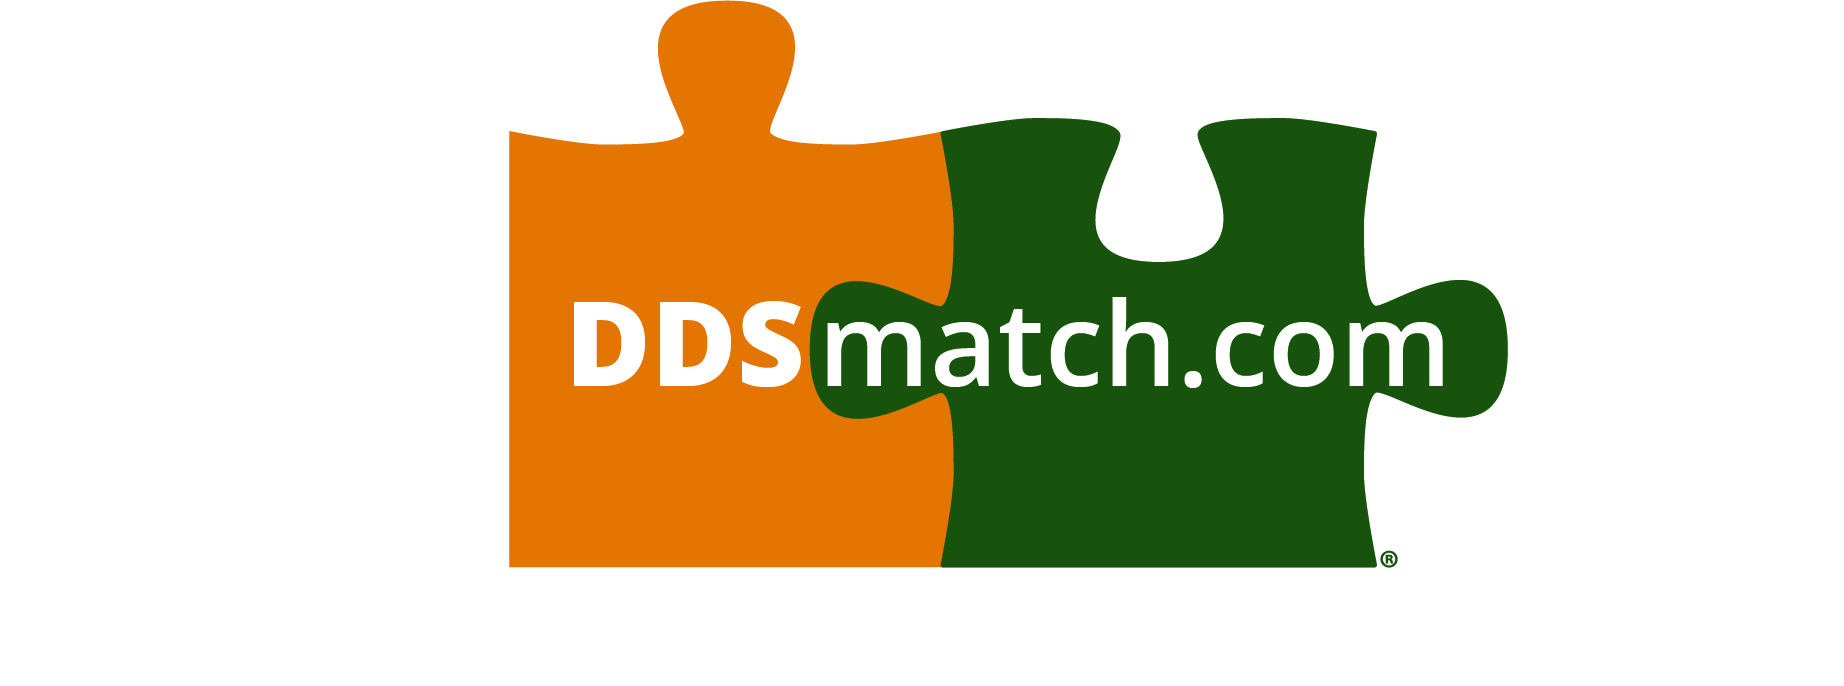 ddsmatch.com - Matt Conrad Logo